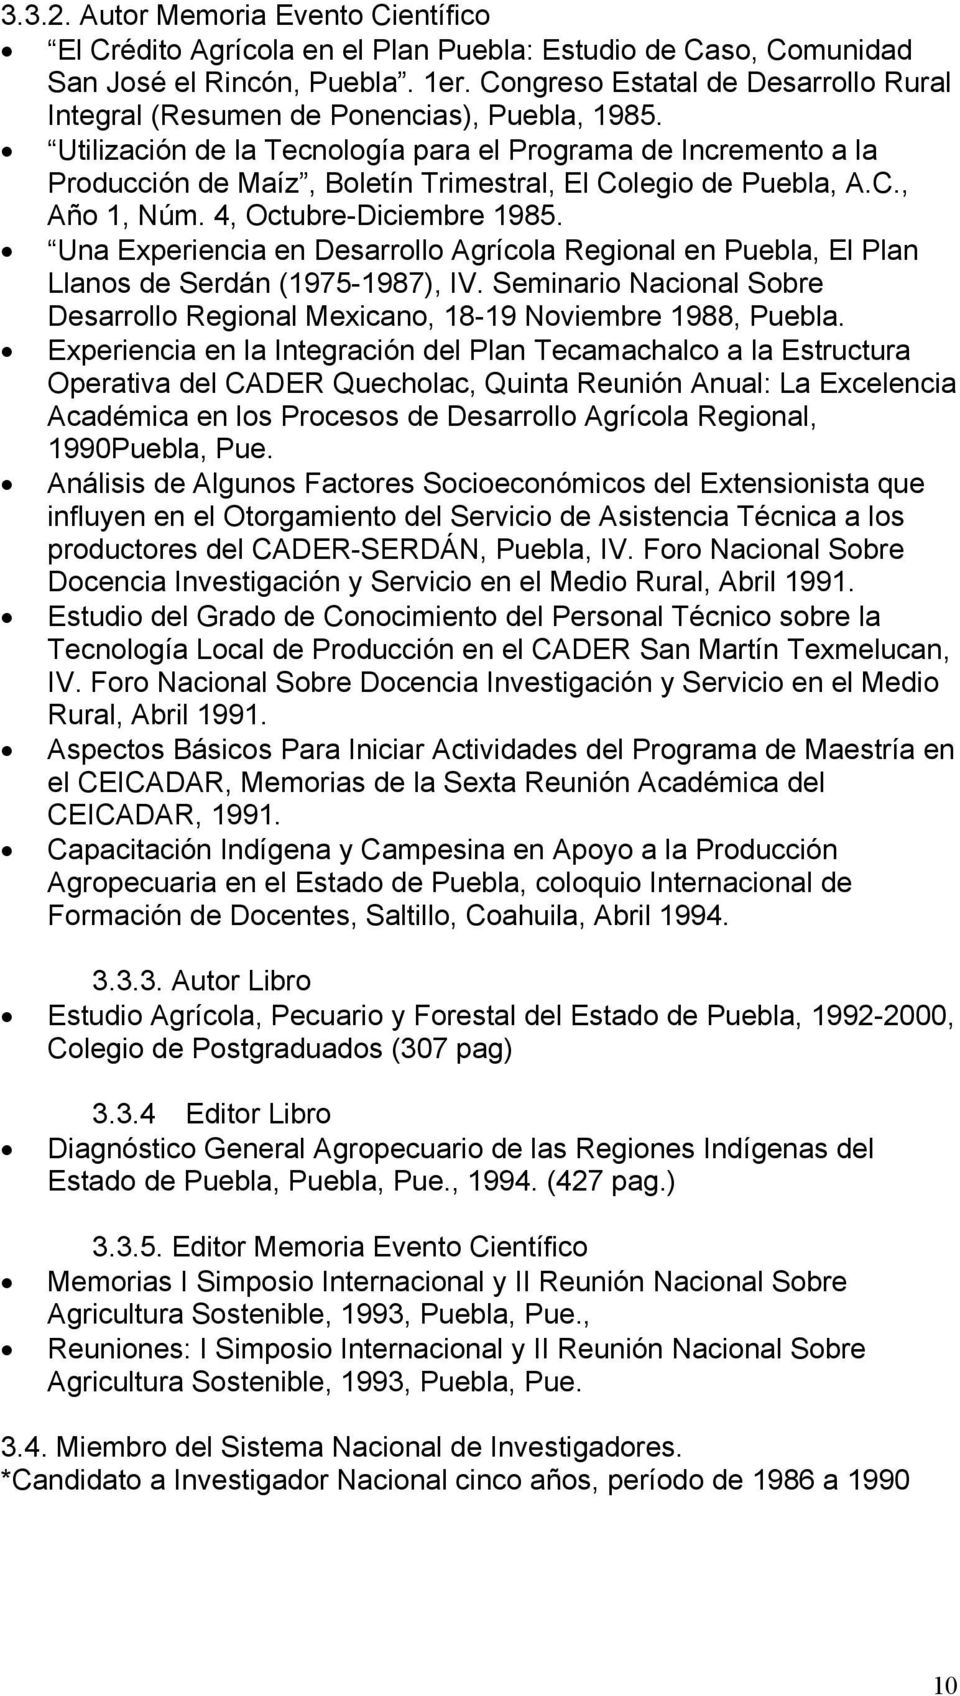 Utilización de la Tecnología para el Programa de Incremento a la Producción de Maíz, Boletín Trimestral, El Colegio de Puebla, A.C., Año 1, Núm. 4, Octubre-Diciembre 1985.